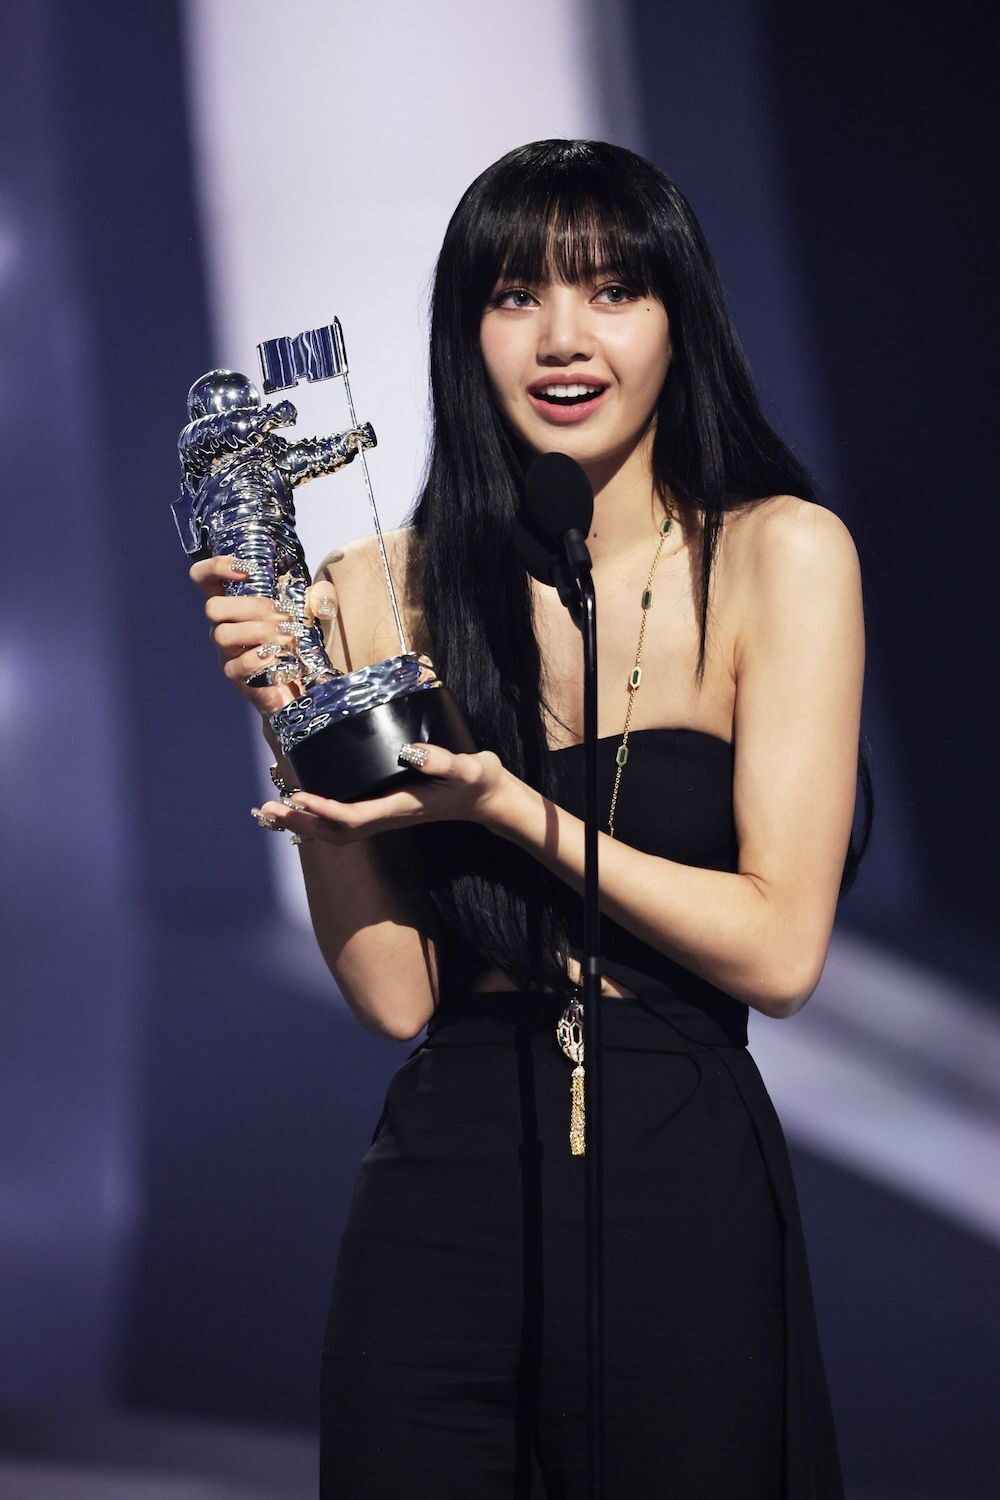 Blackpink’s Lisa Wins ‘Best K-Pop’ Award at 2022 MTV VMAs